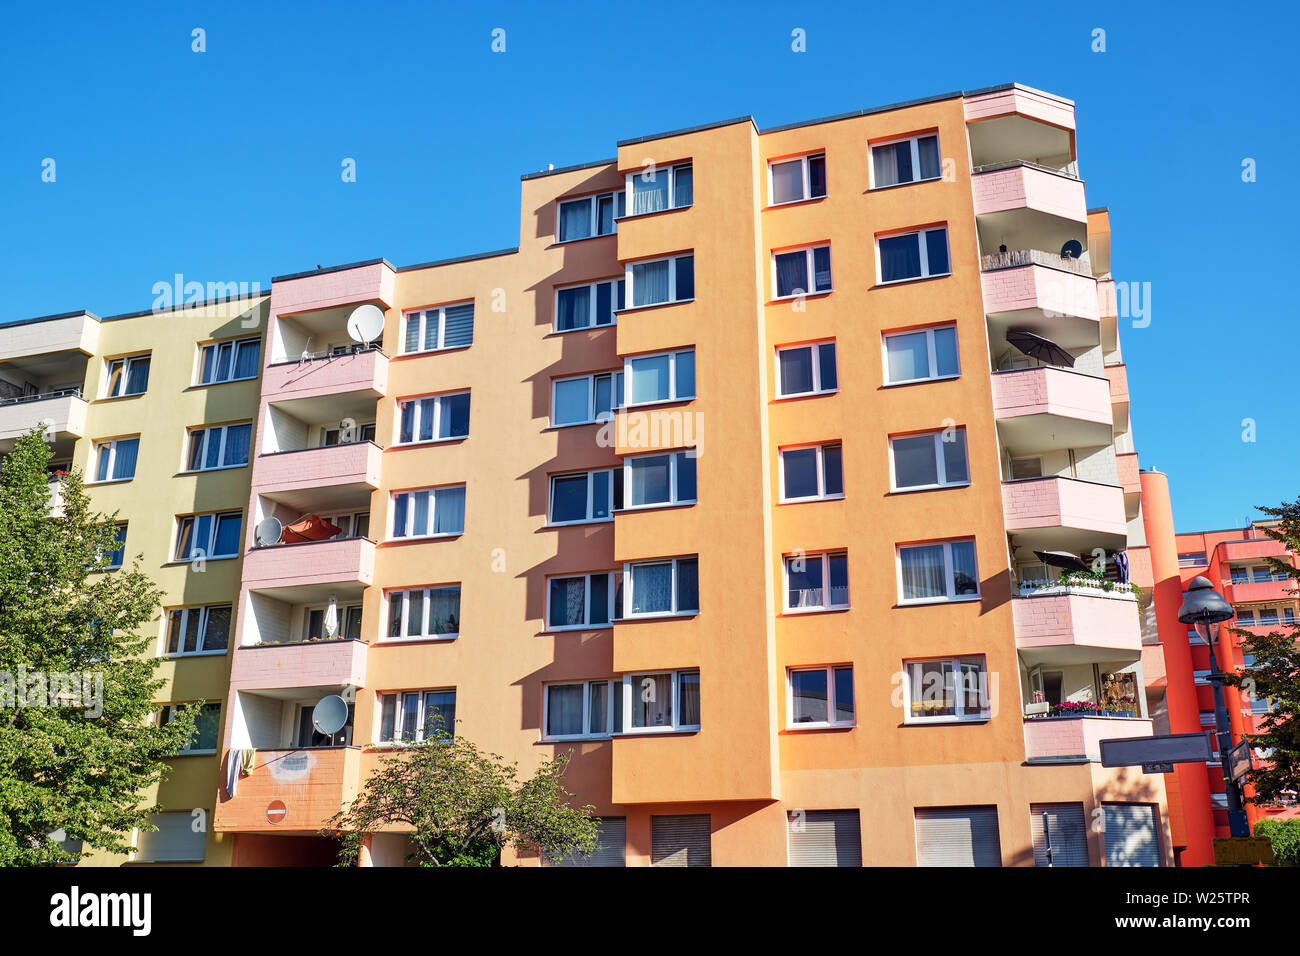 Coloridos edificios de apartamentos desde los años setenta vistos en Berlín, Alemania Foto de stock